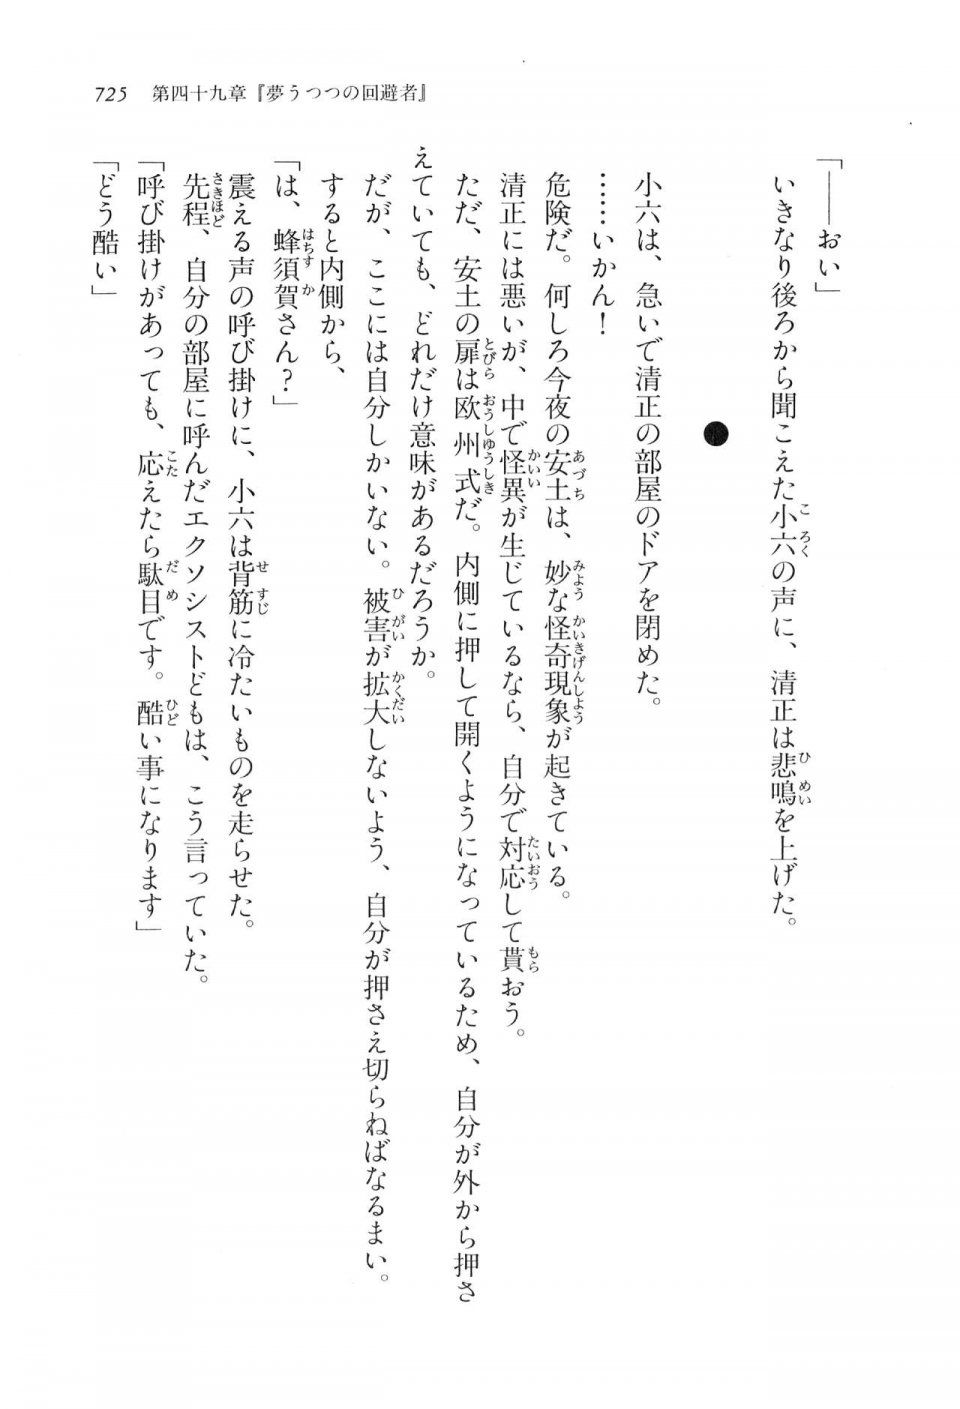 Kyoukai Senjou no Horizon LN Vol 17(7B) - Photo #727